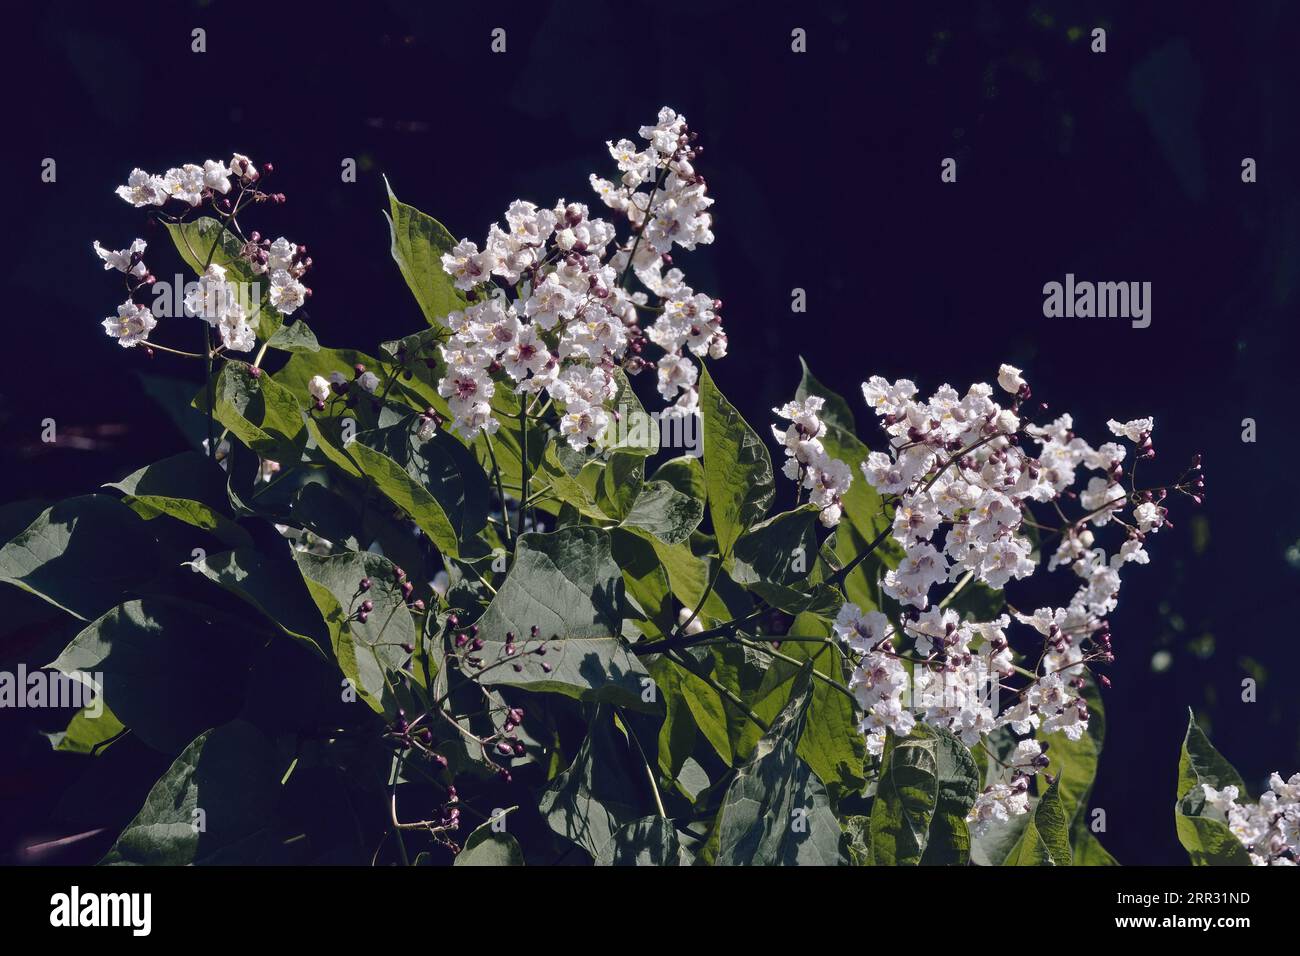 Particolare di una pianta della catalpa settentrionale in fioritura su sfondo scuro, Catalpa speciosa; Bignoniaceae Foto Stock